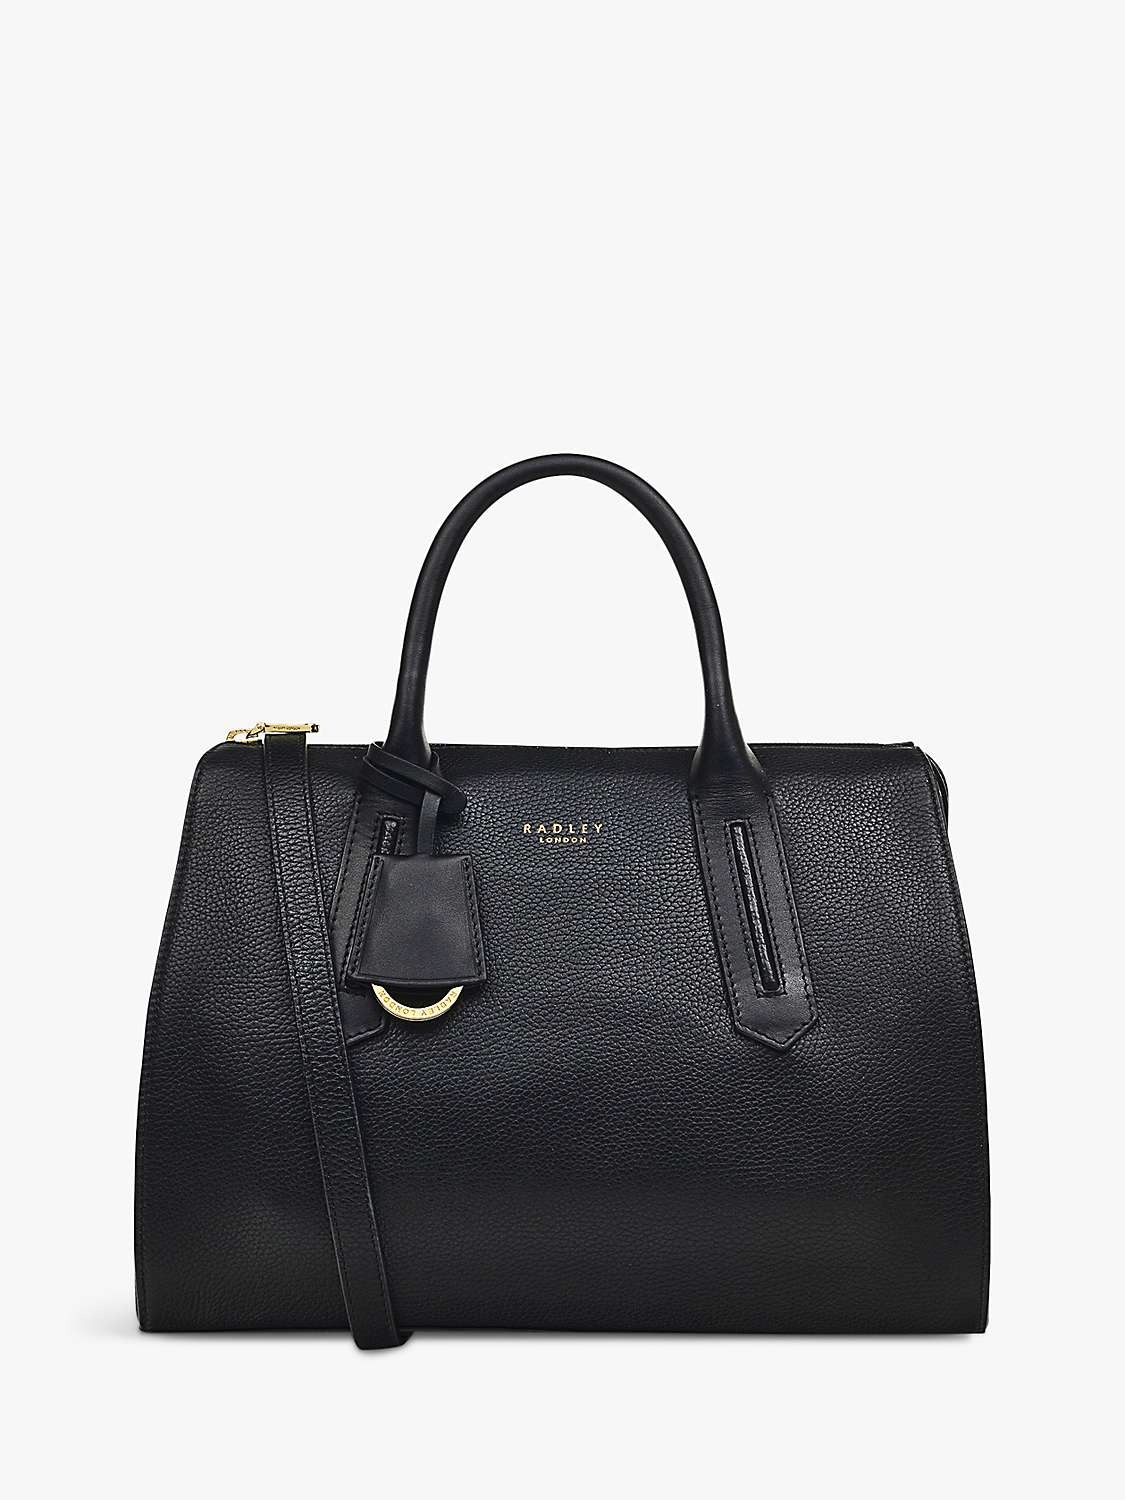 Radley Badgers Walk Medium Zip Top Grab Bag, Black at John Lewis & Partners